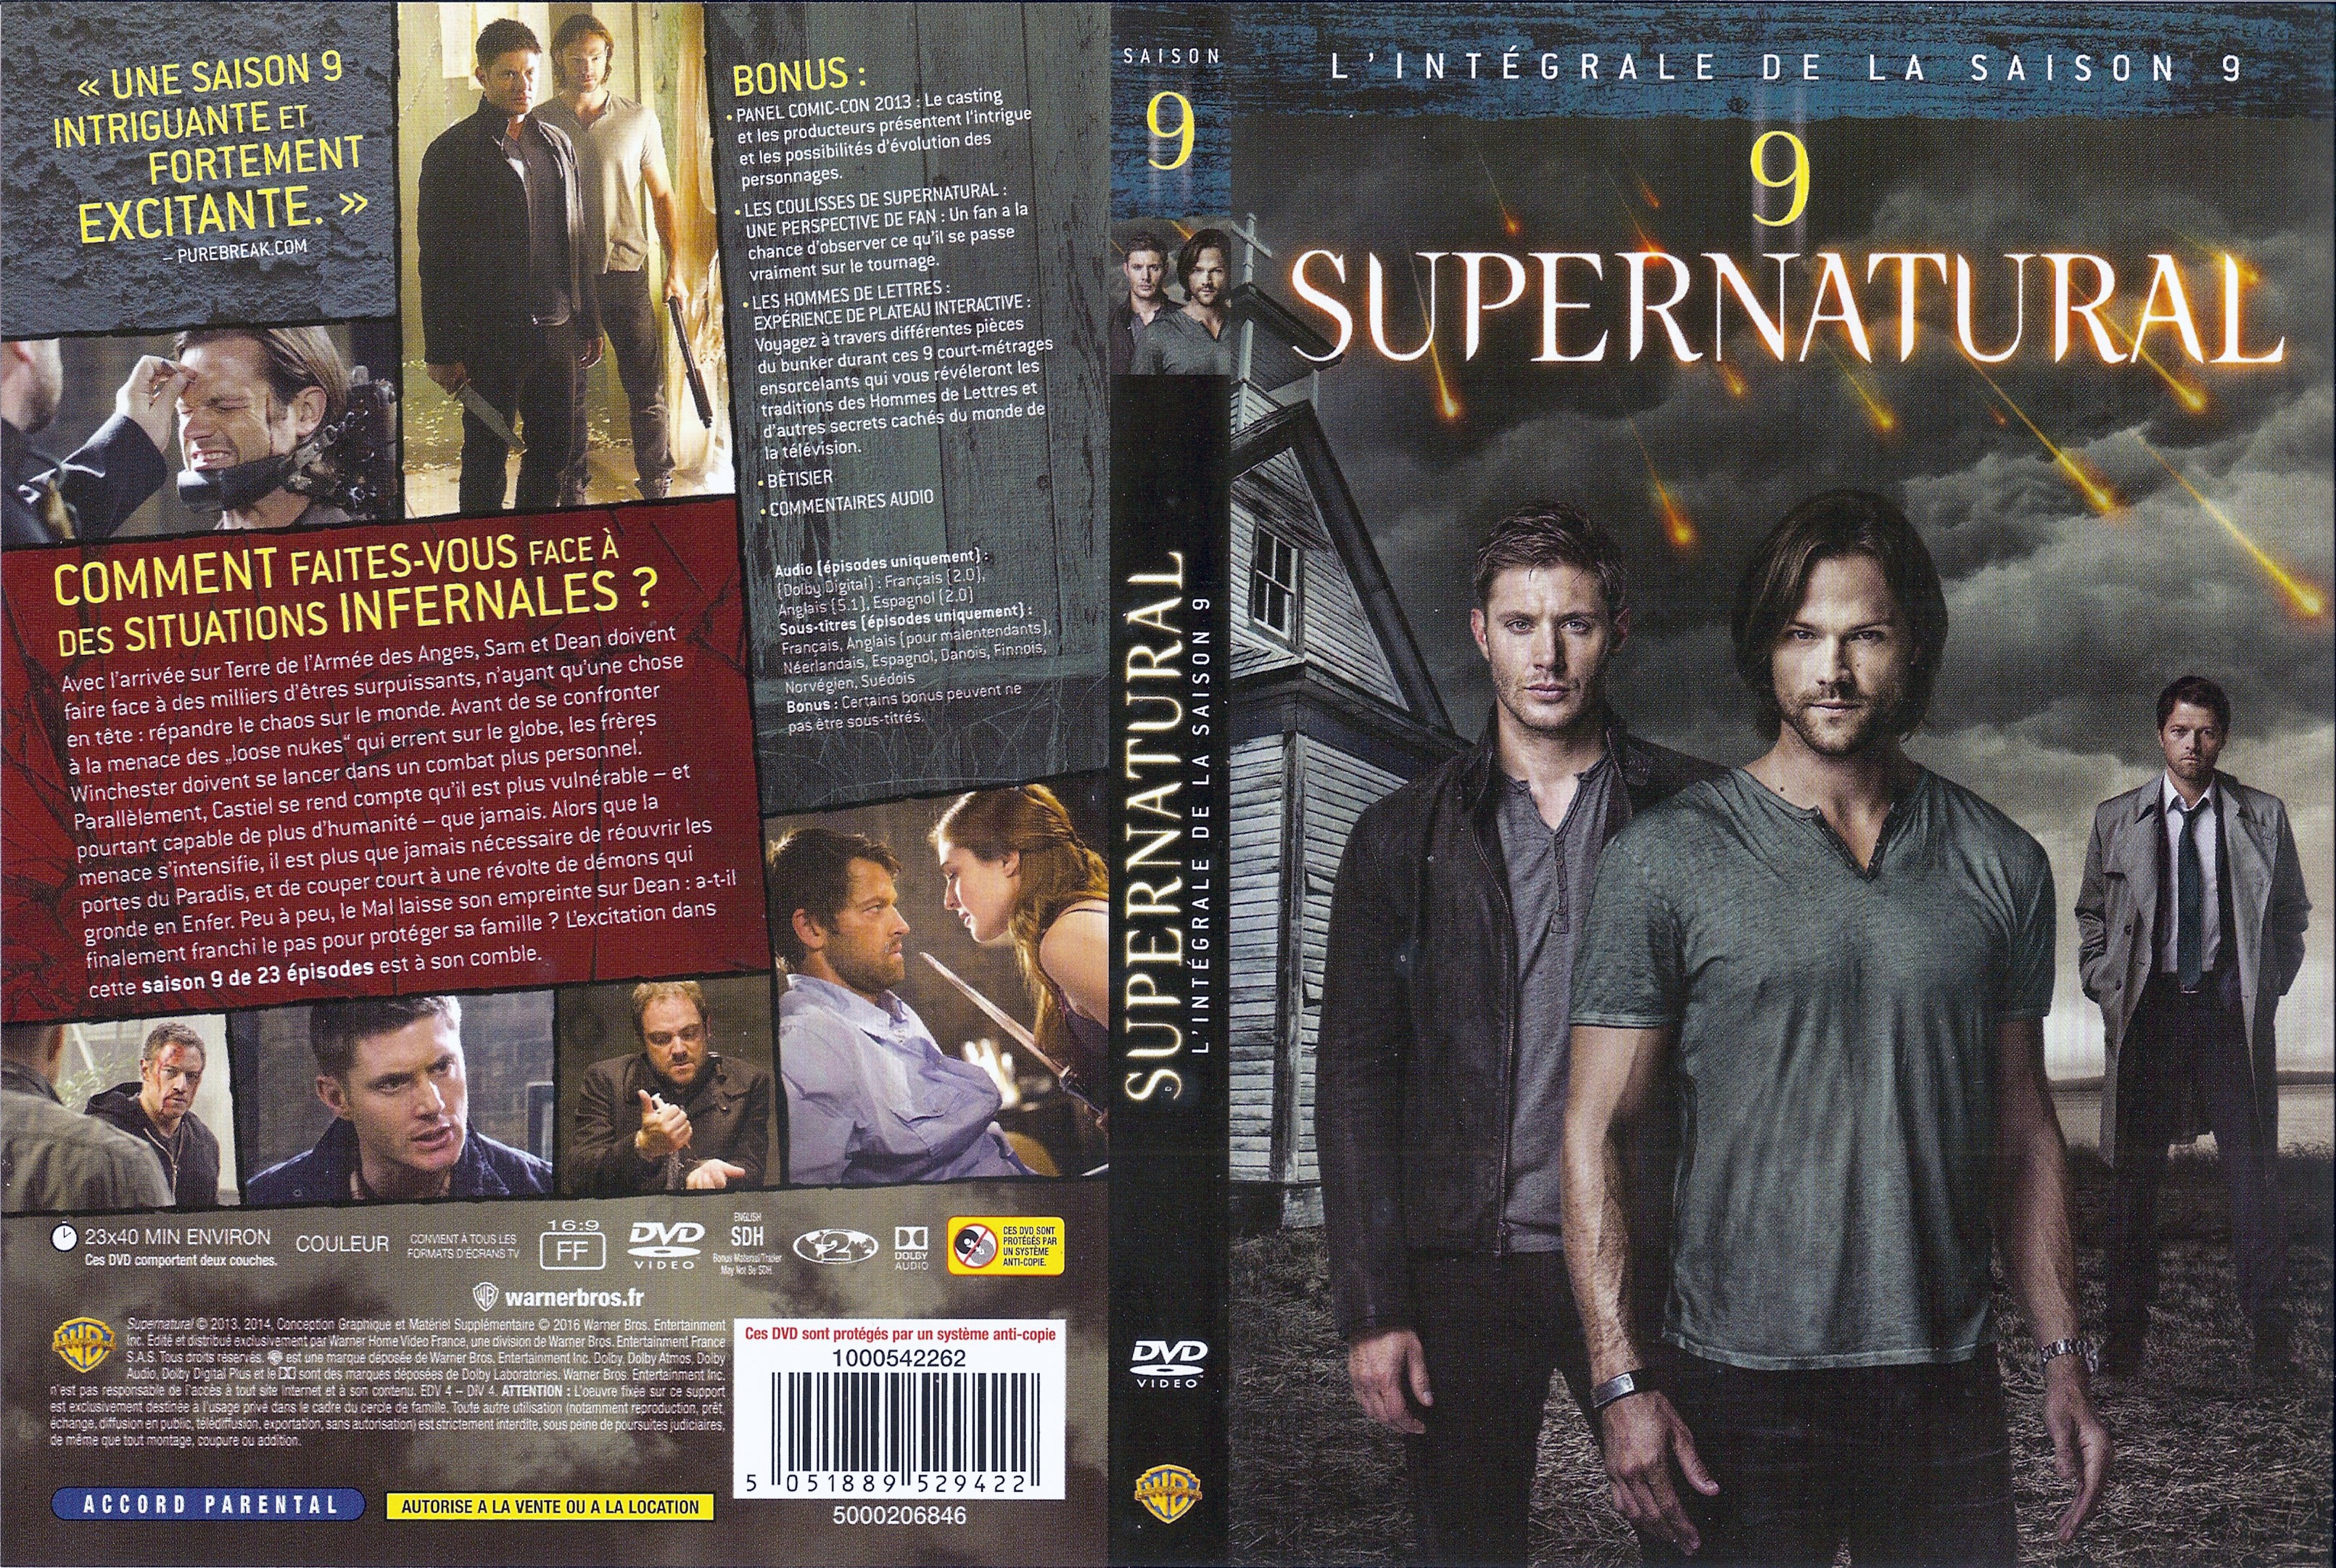 Jaquette DVD Supernatural saison 9